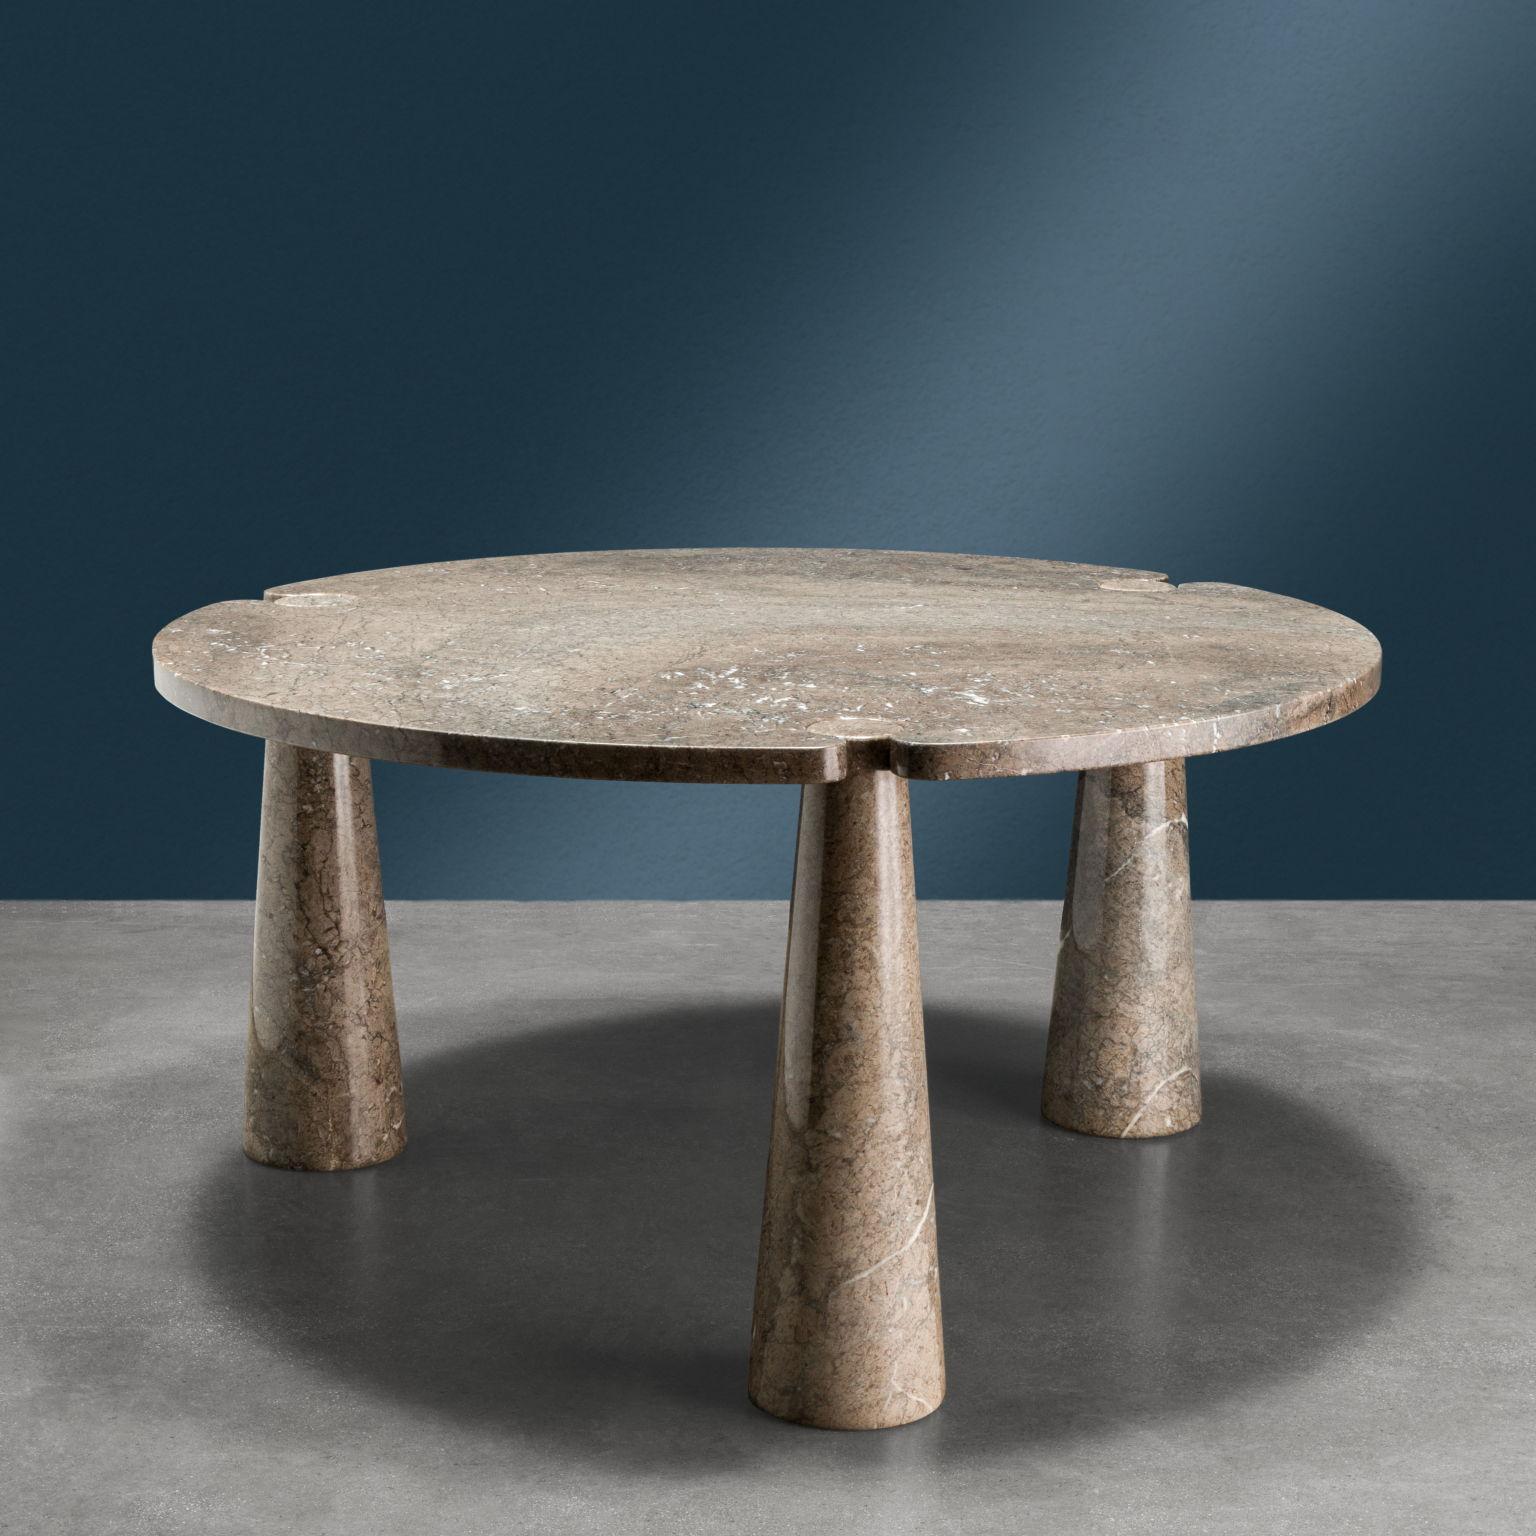 Tavolo da pranzo con piano tondo sorretto da tre gambe della serie 'Eros' in marmo grigio Mondragone. Produzione Skipper anni '70, design Angelo Mangiarotti.